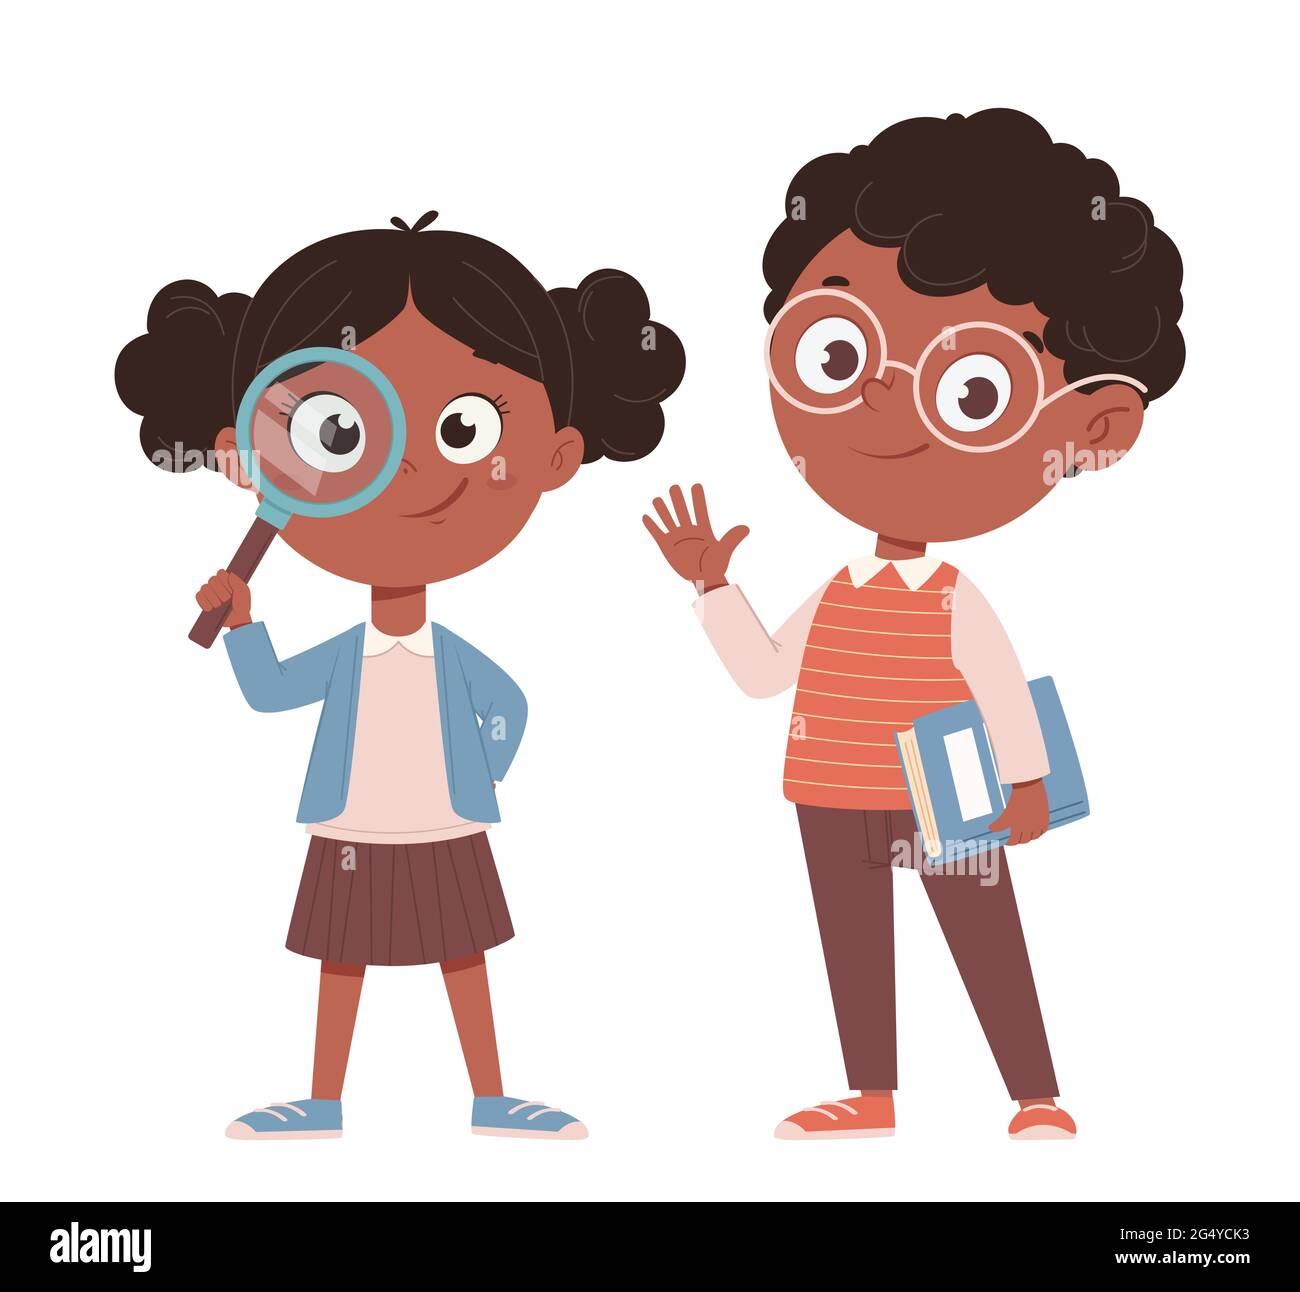 Concept de retour à l'école. Joyeux écolier et écolier afro-américain. Personnages de dessin animé mignons. Illustration vectorielle Illustration de Vecteur